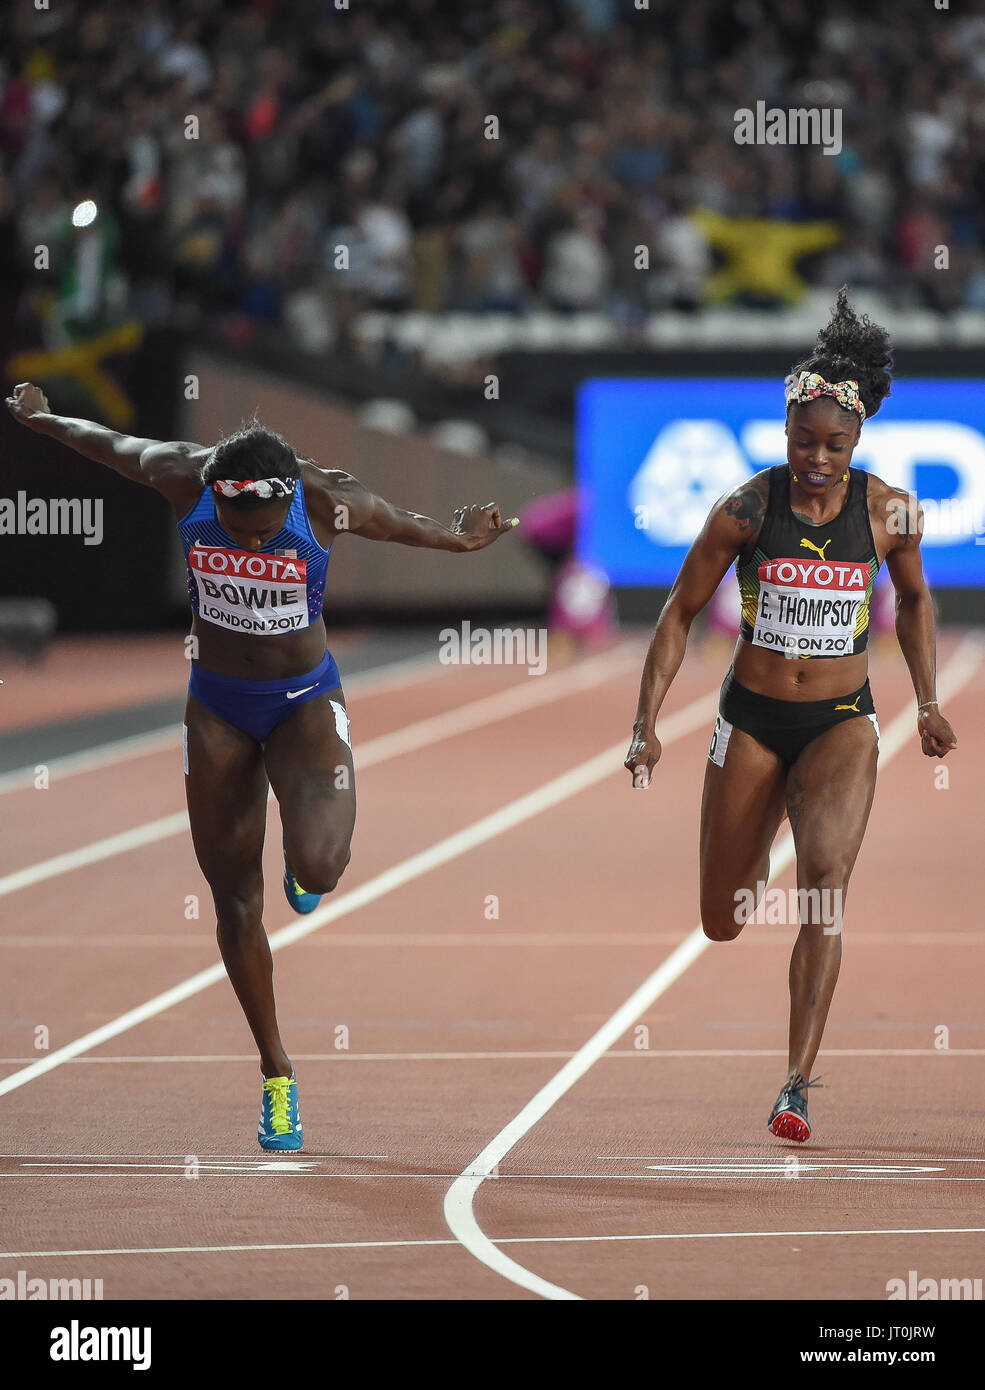 Londres, Royaume-Uni. 6e août, 2017. Tori BOWIE, USA, et Elaine Thompson, Jamaïque, pendant 100 mètres finale à Londres le 6 août 2017 au 2017 es Championnats du monde d'athlétisme. Banque D'Images